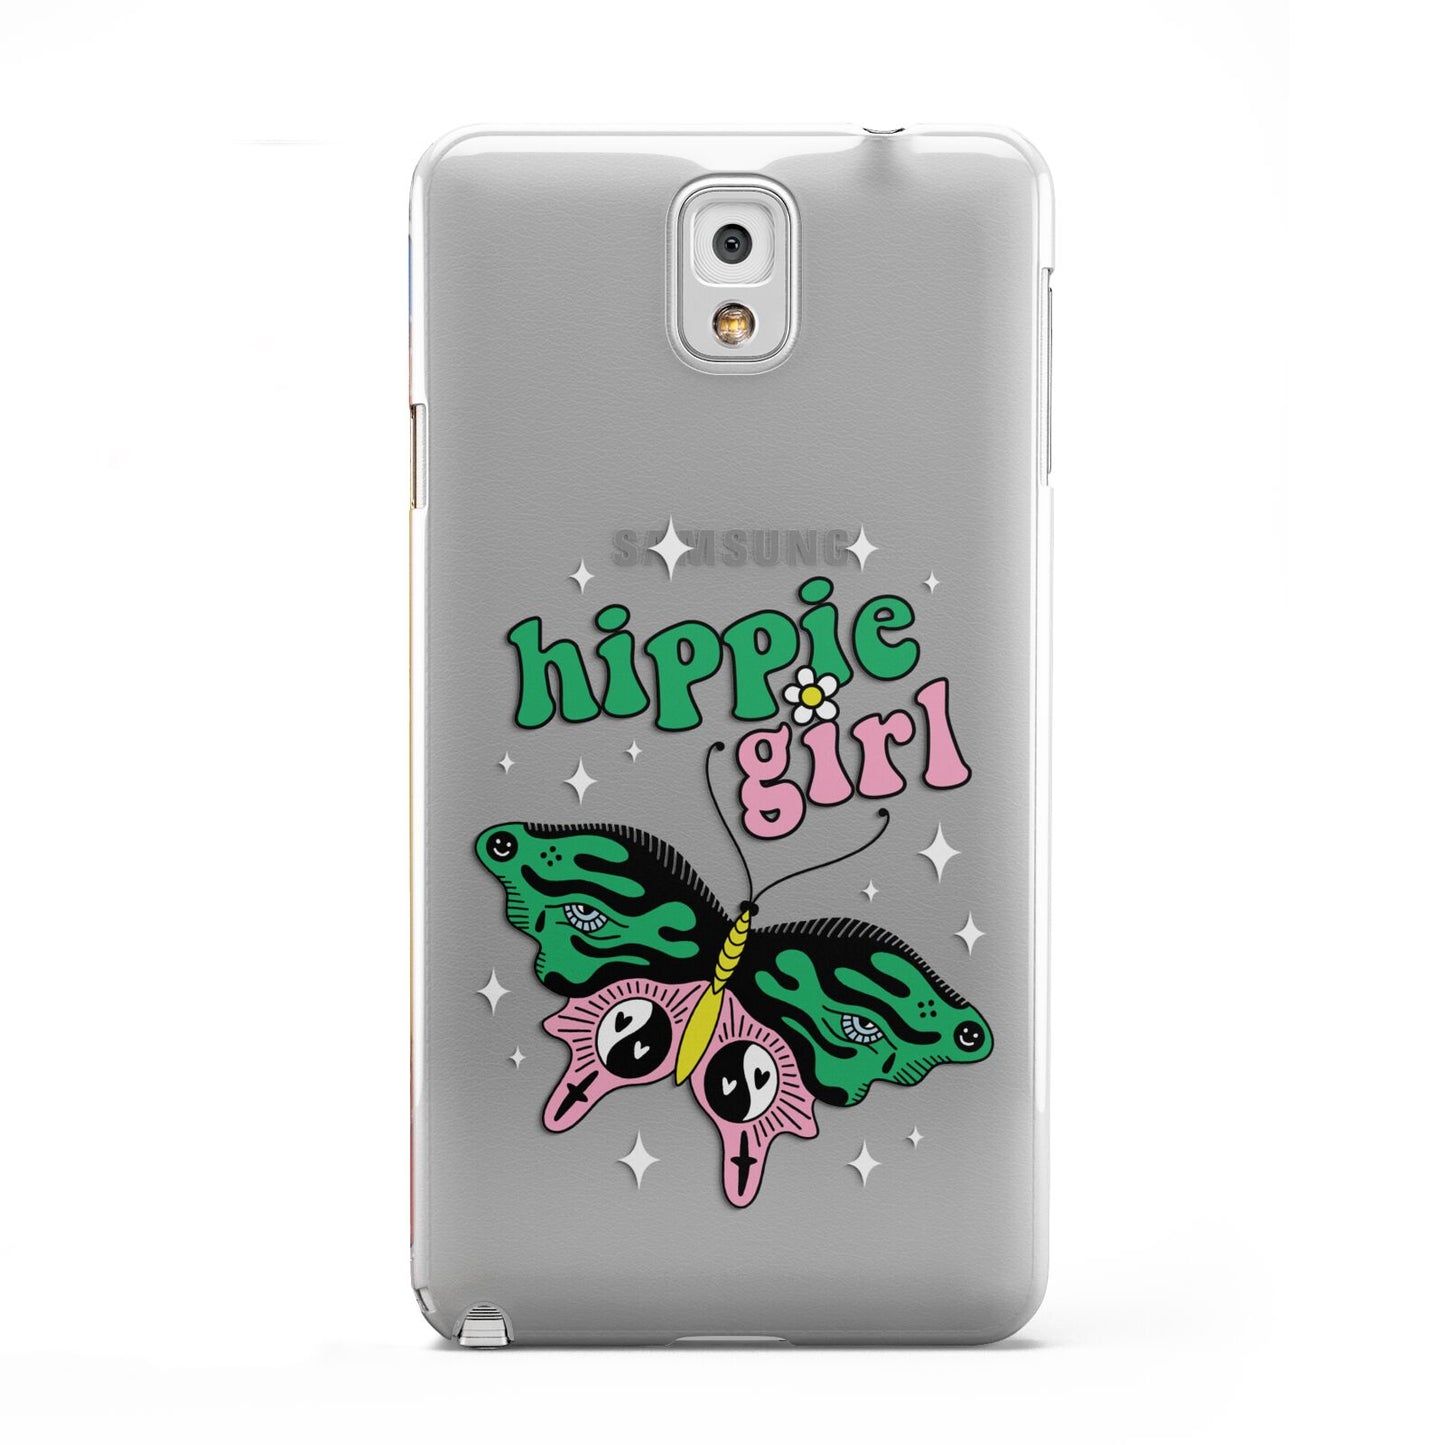 Hippie Girl Samsung Galaxy Note 3 Case